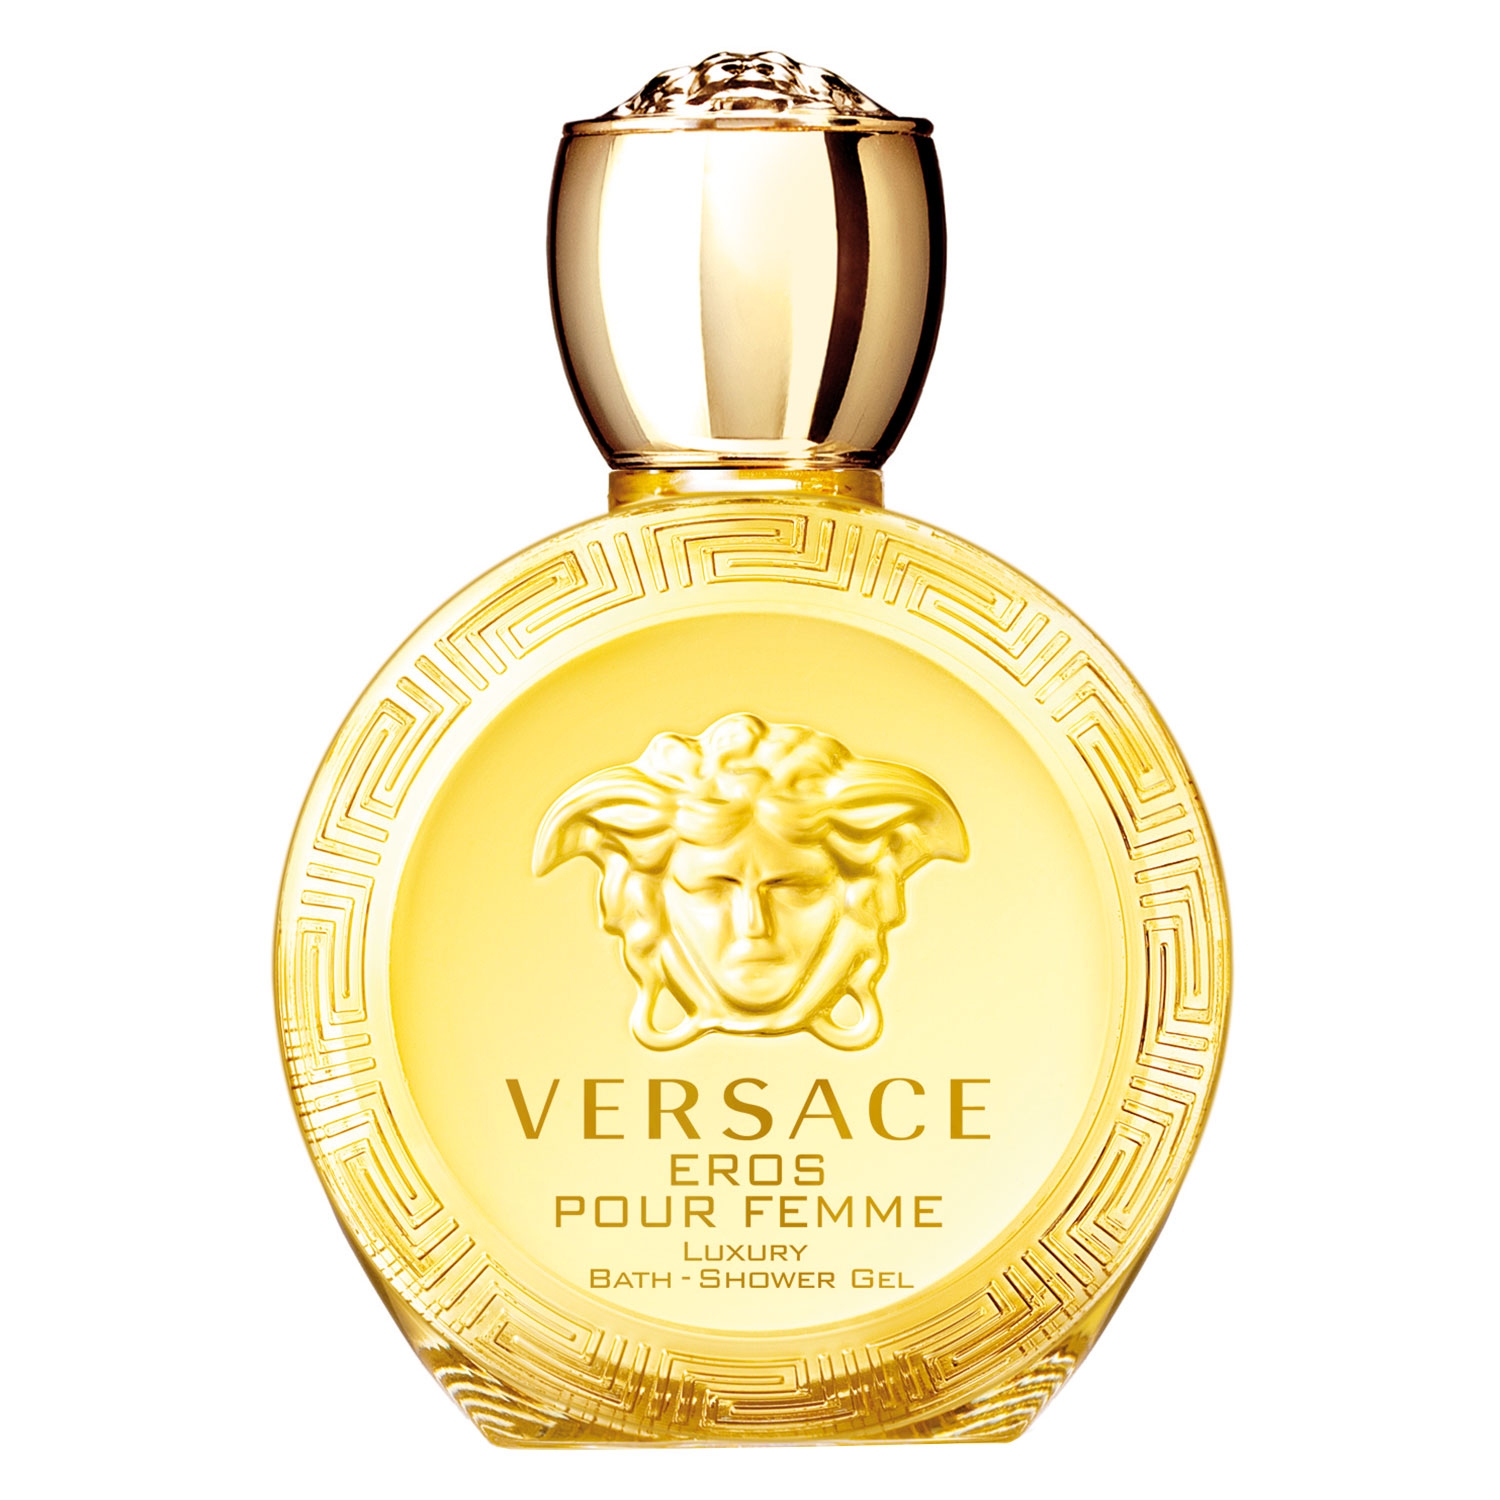 Produktbild von Versace Eros - Bath & Shower Gel Pour Femme